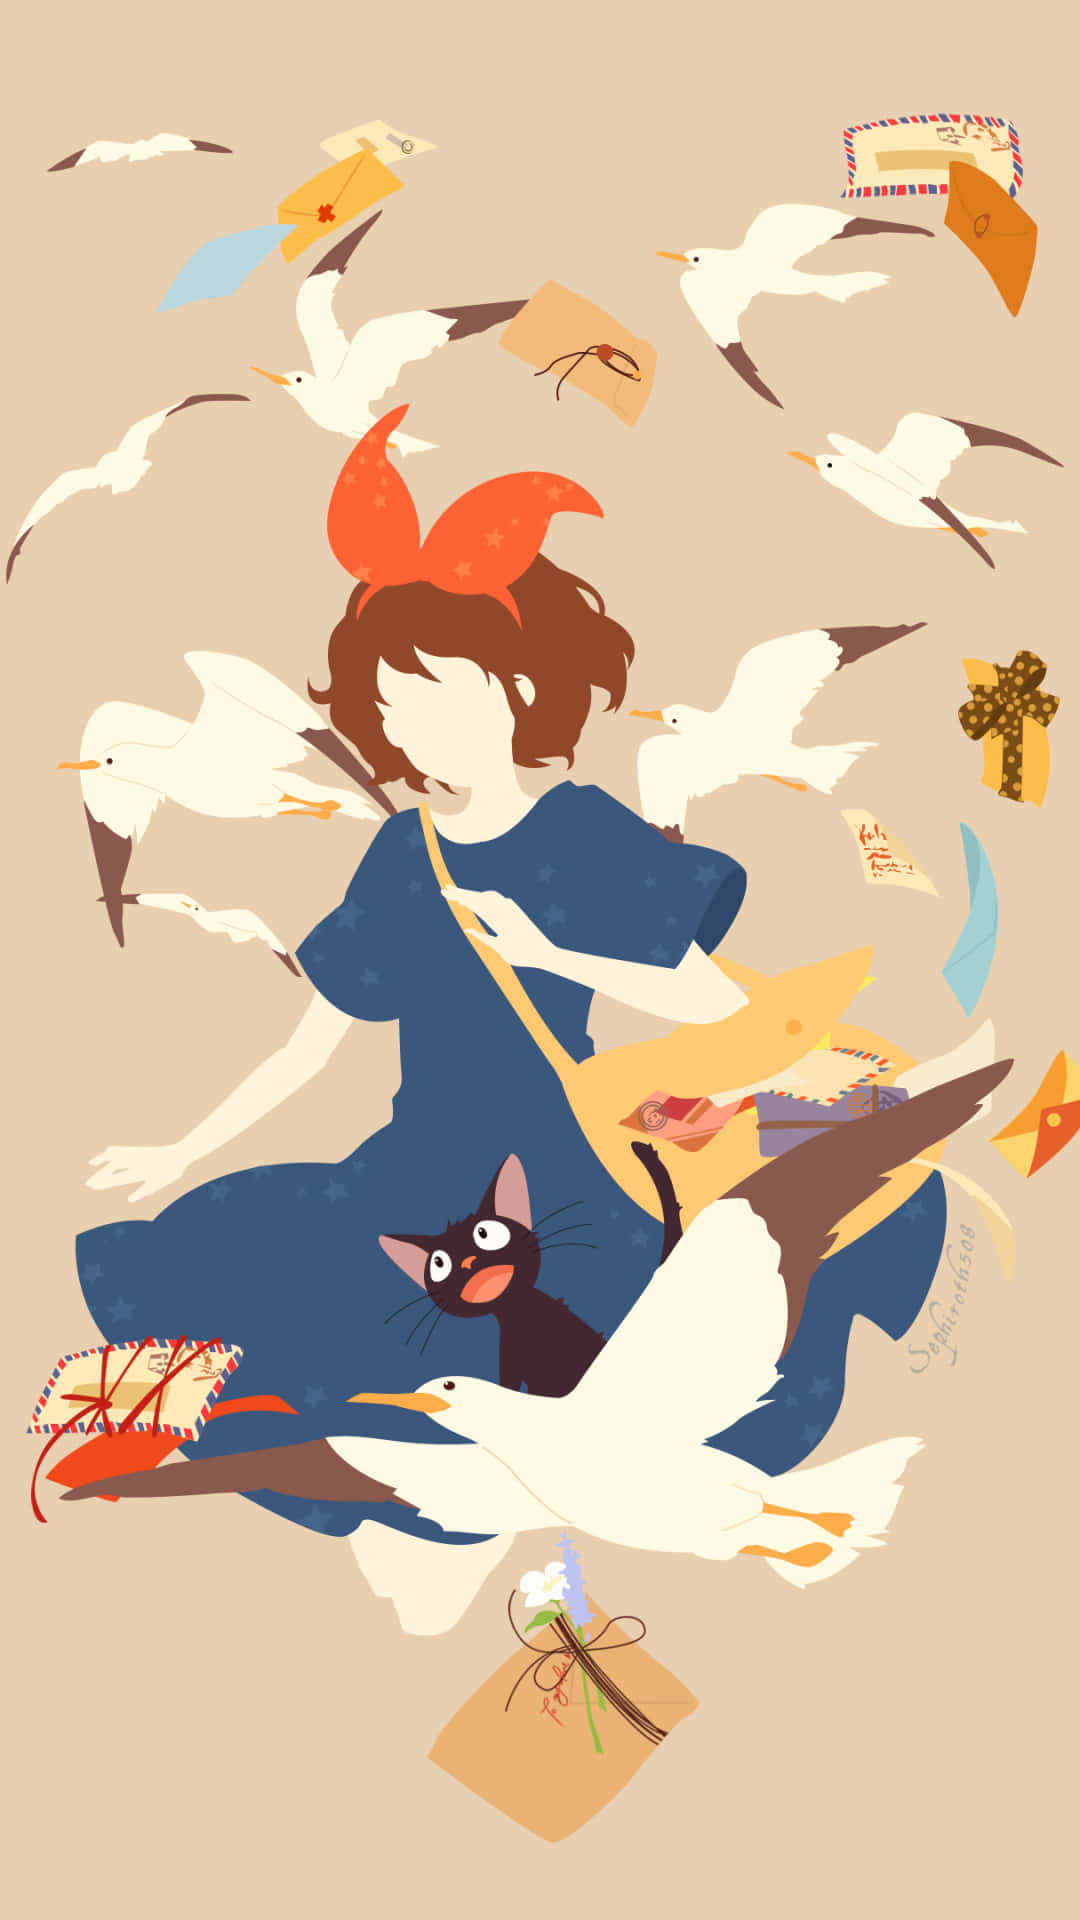 Entfesselnsie Ihre Kreativität Mit Dem Wunderschön Gestalteten Studio Ghibli Handy Wallpaper